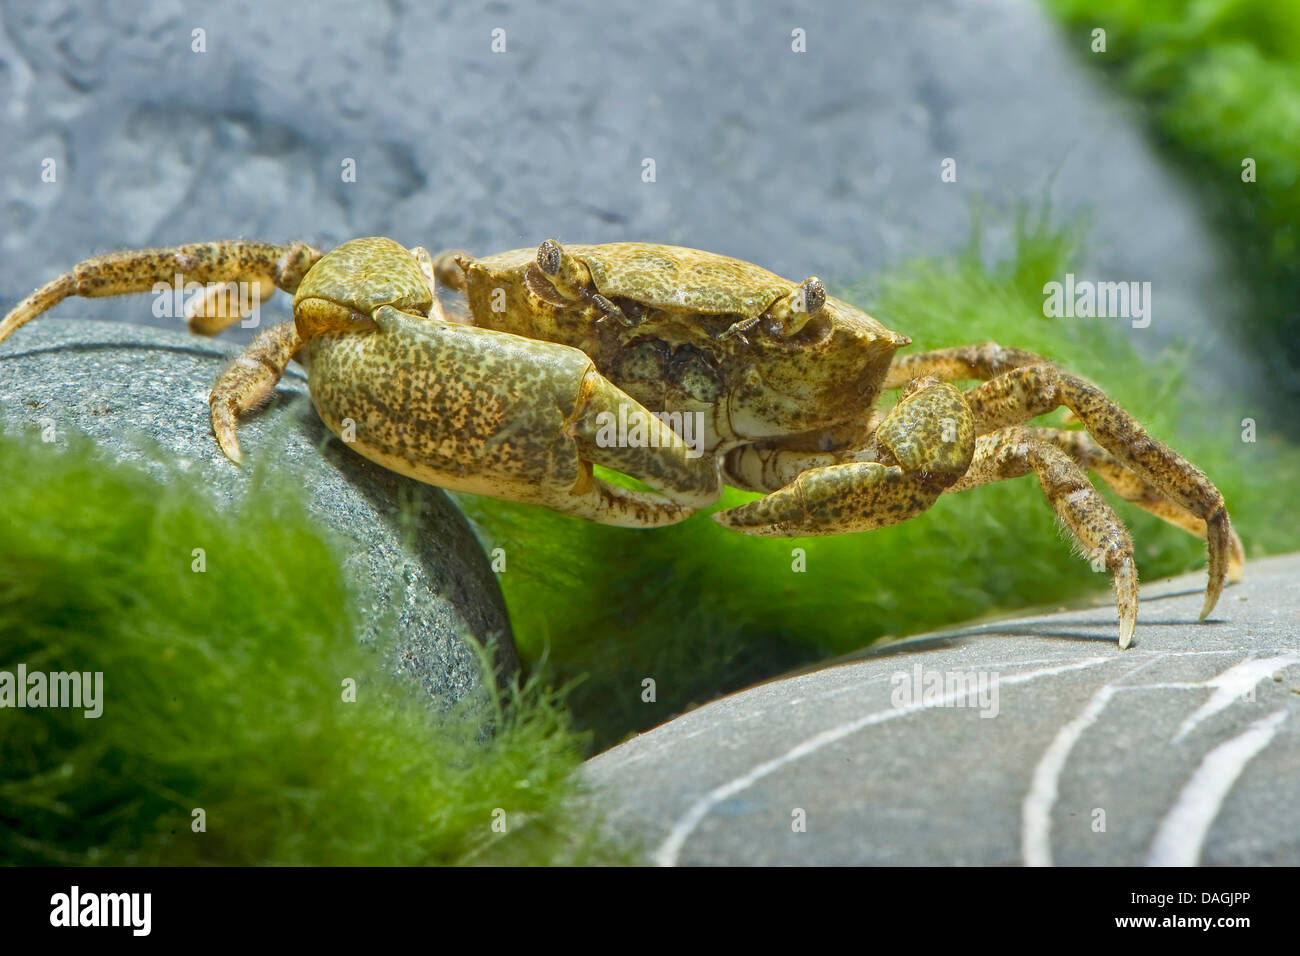 Le crabe royal, le crabe royal rouge, le crabe royal d'Alaska, de l'Alaska king stone crab (Crabe Crabe Kamchatka, japonais, russe) Crabe (Paralithodes camtschaticus), dans la région de terrarium Banque D'Images